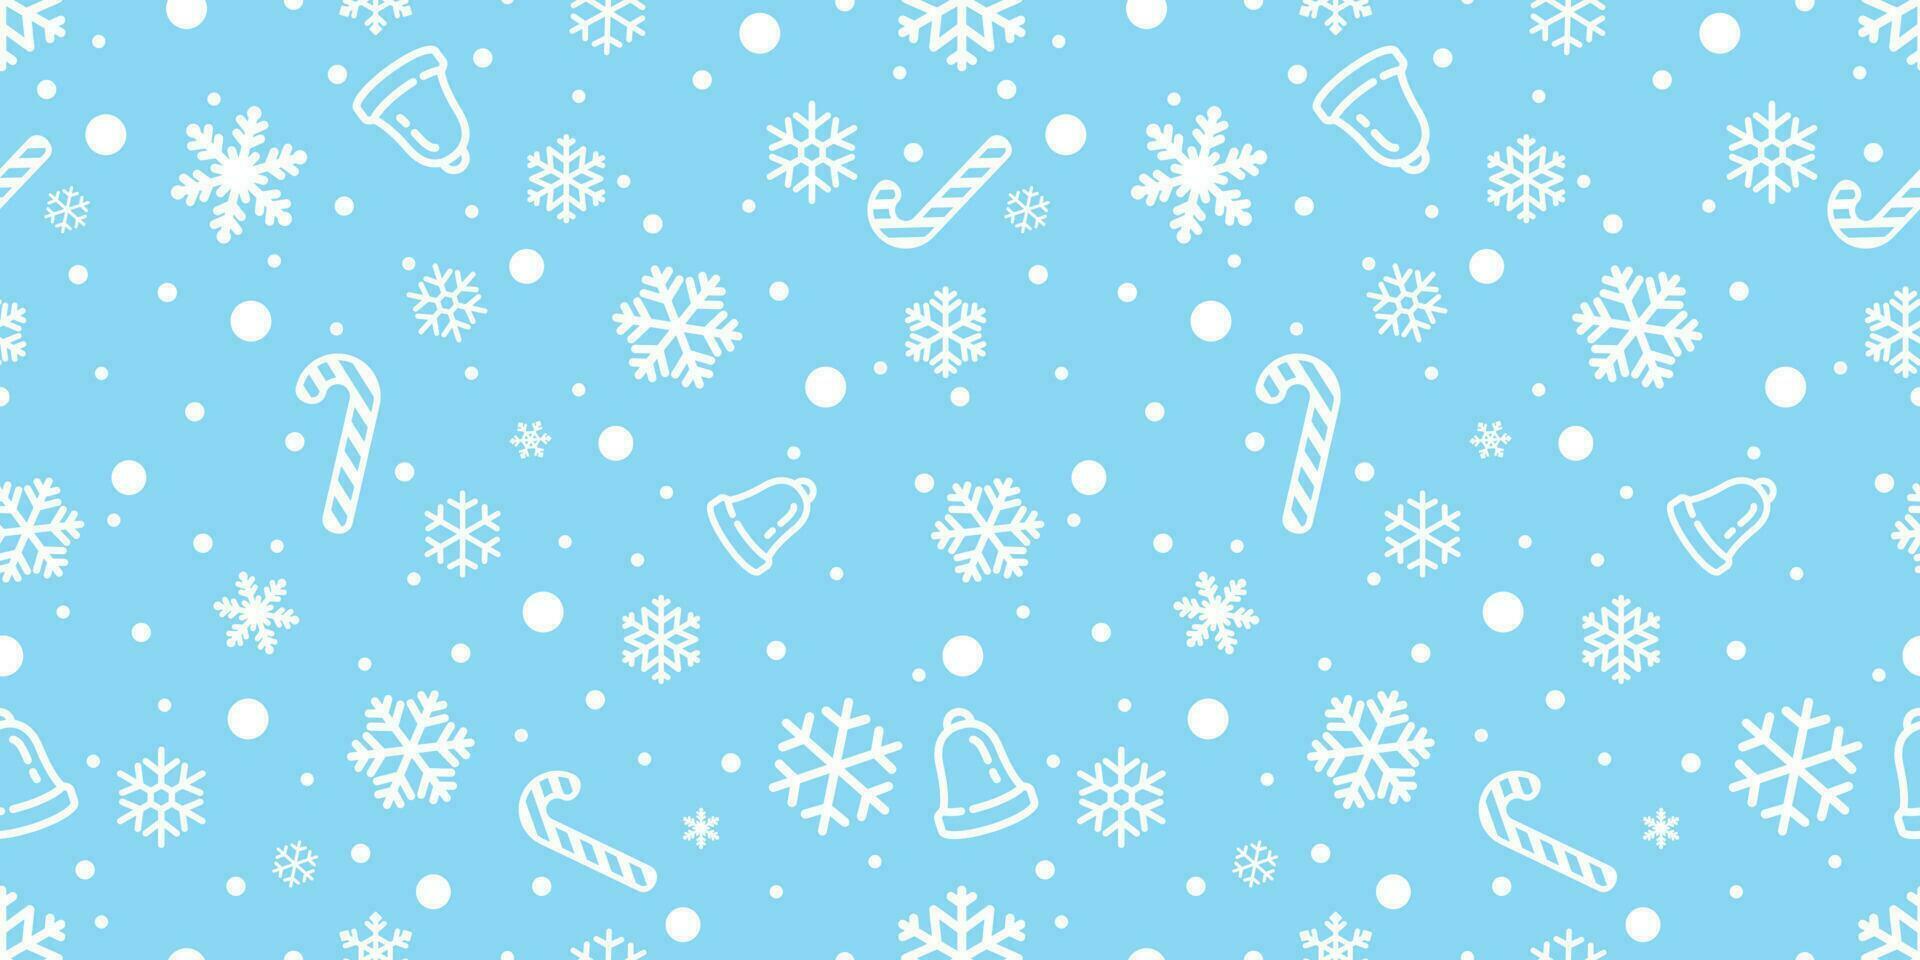 sneeuwvlok naadloos patroon vector Kerstmis sneeuw Kerstmis de kerstman claus snoep riet klok sjaal geïsoleerd herhaling behang tegel achtergrond illustratie geschenk omhulsel papier